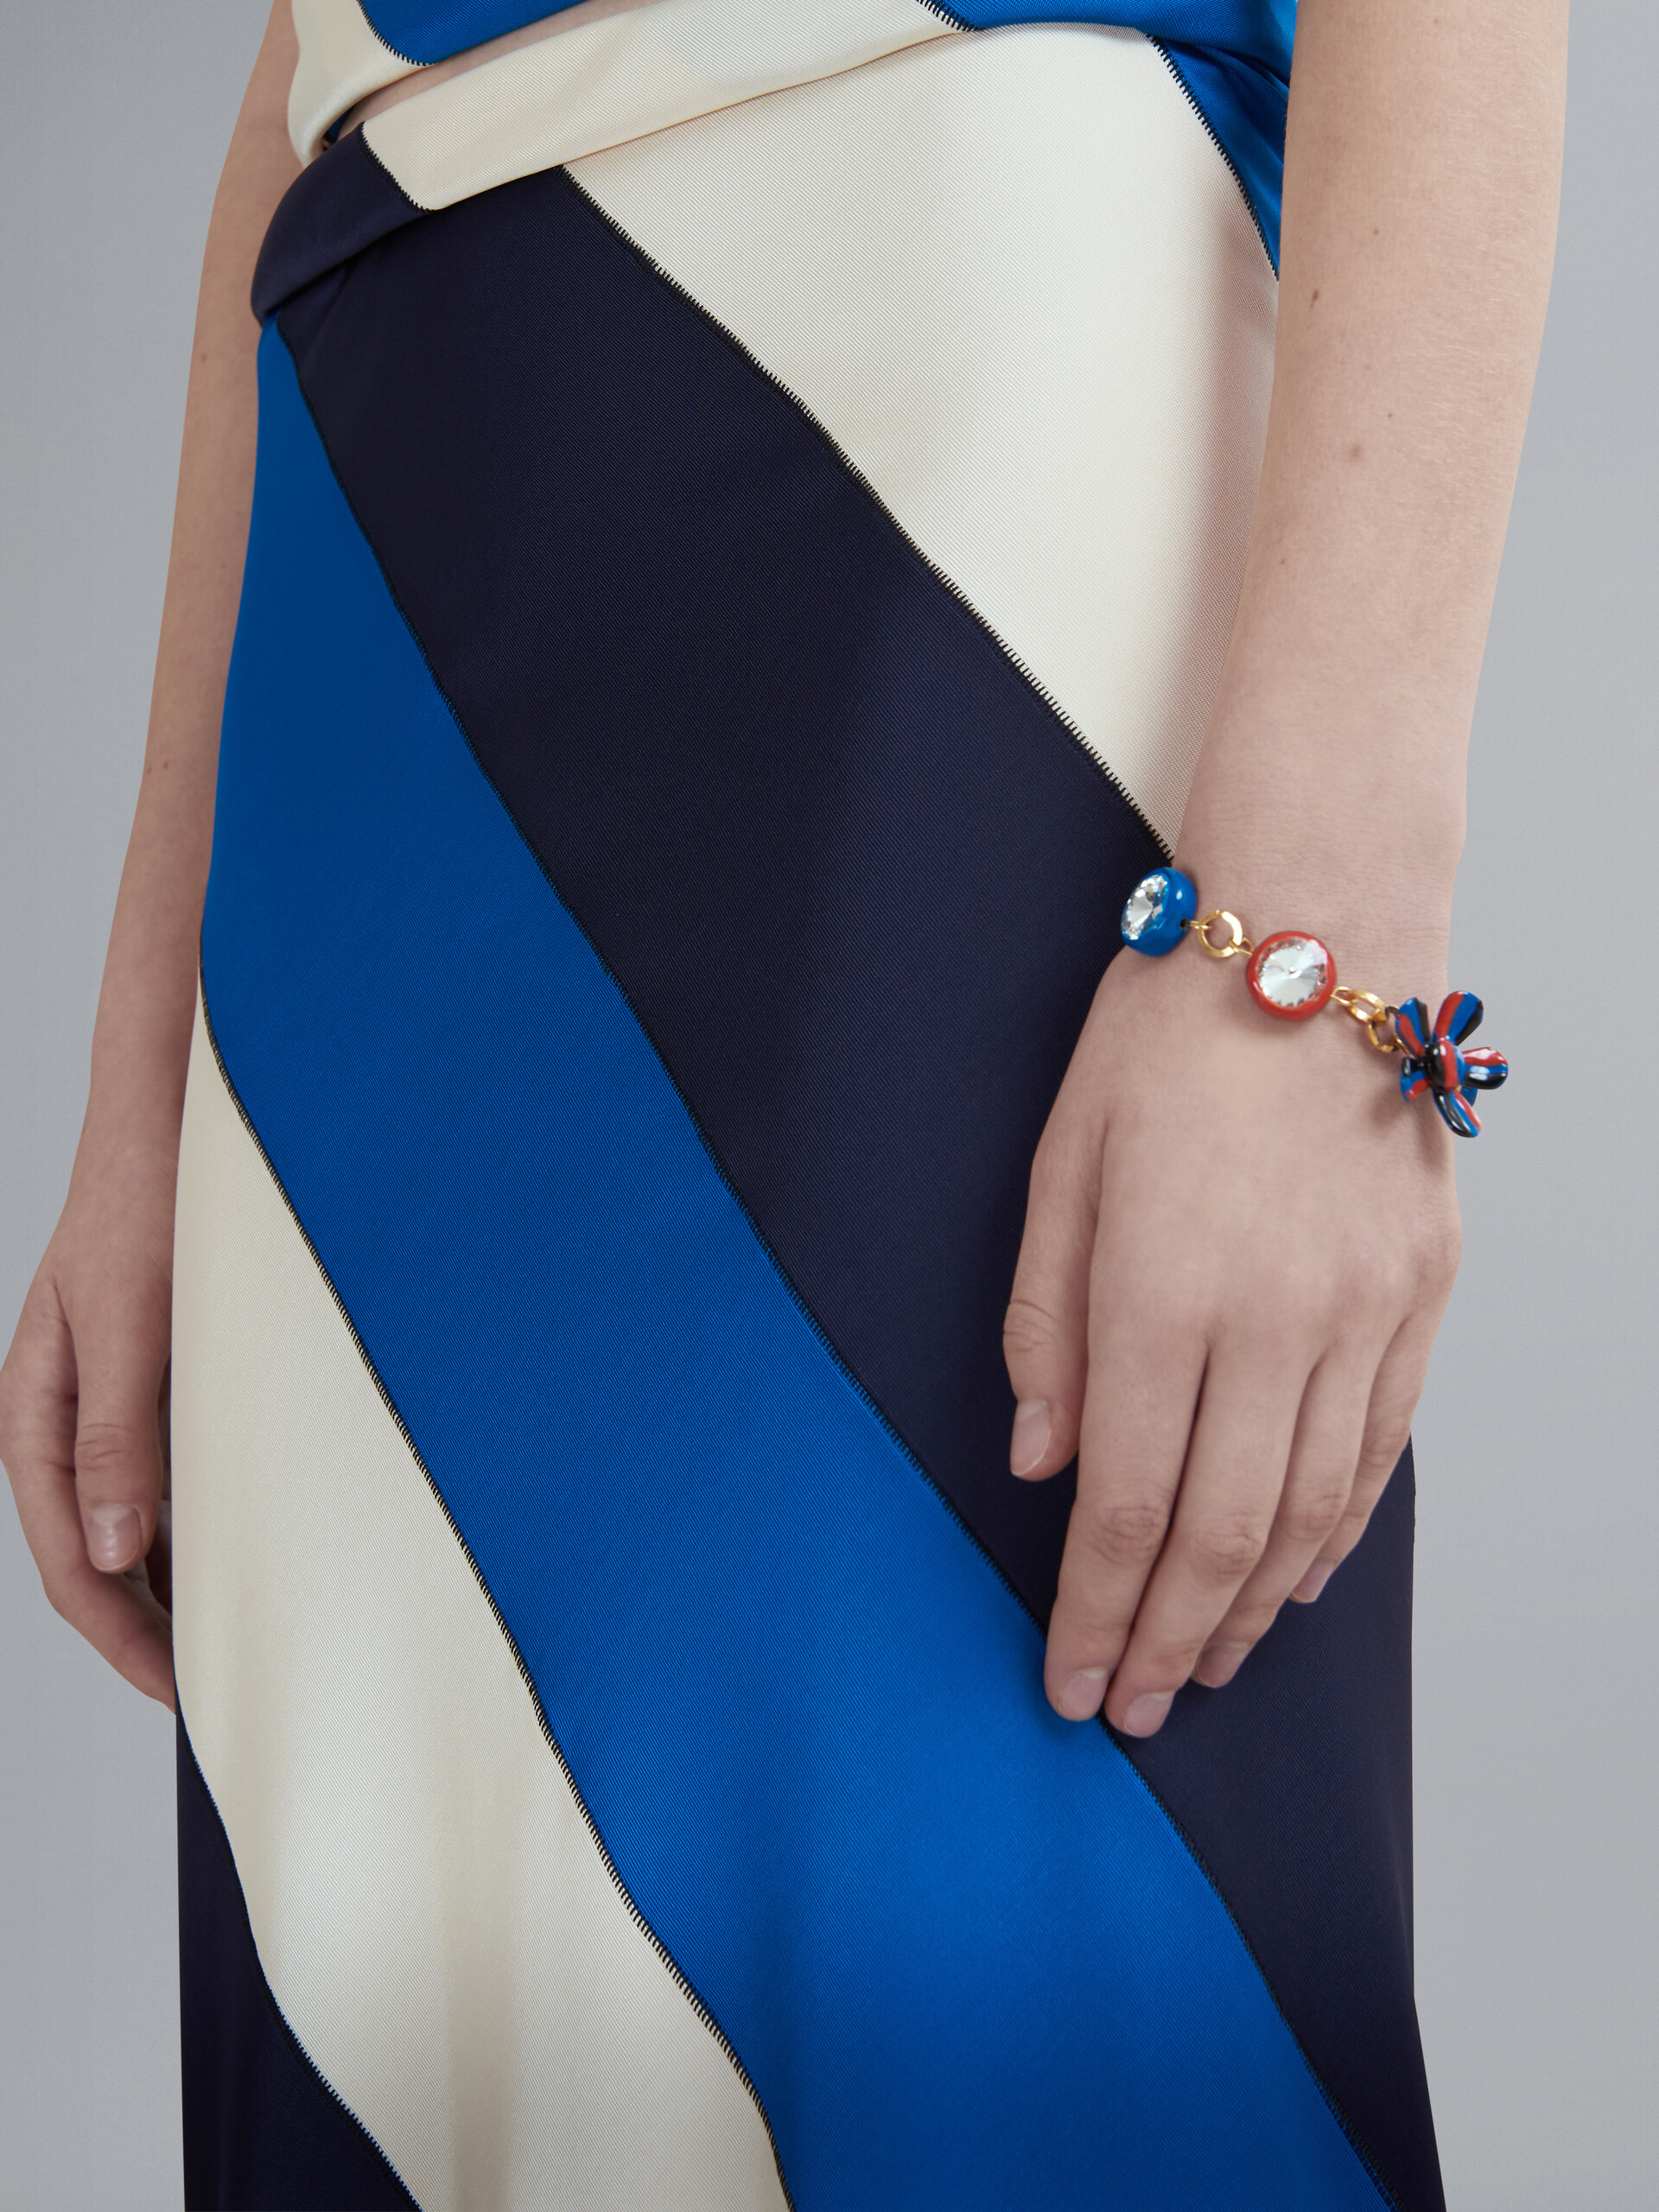 DAISY red and blue bracelet - Bracelets - Image 2